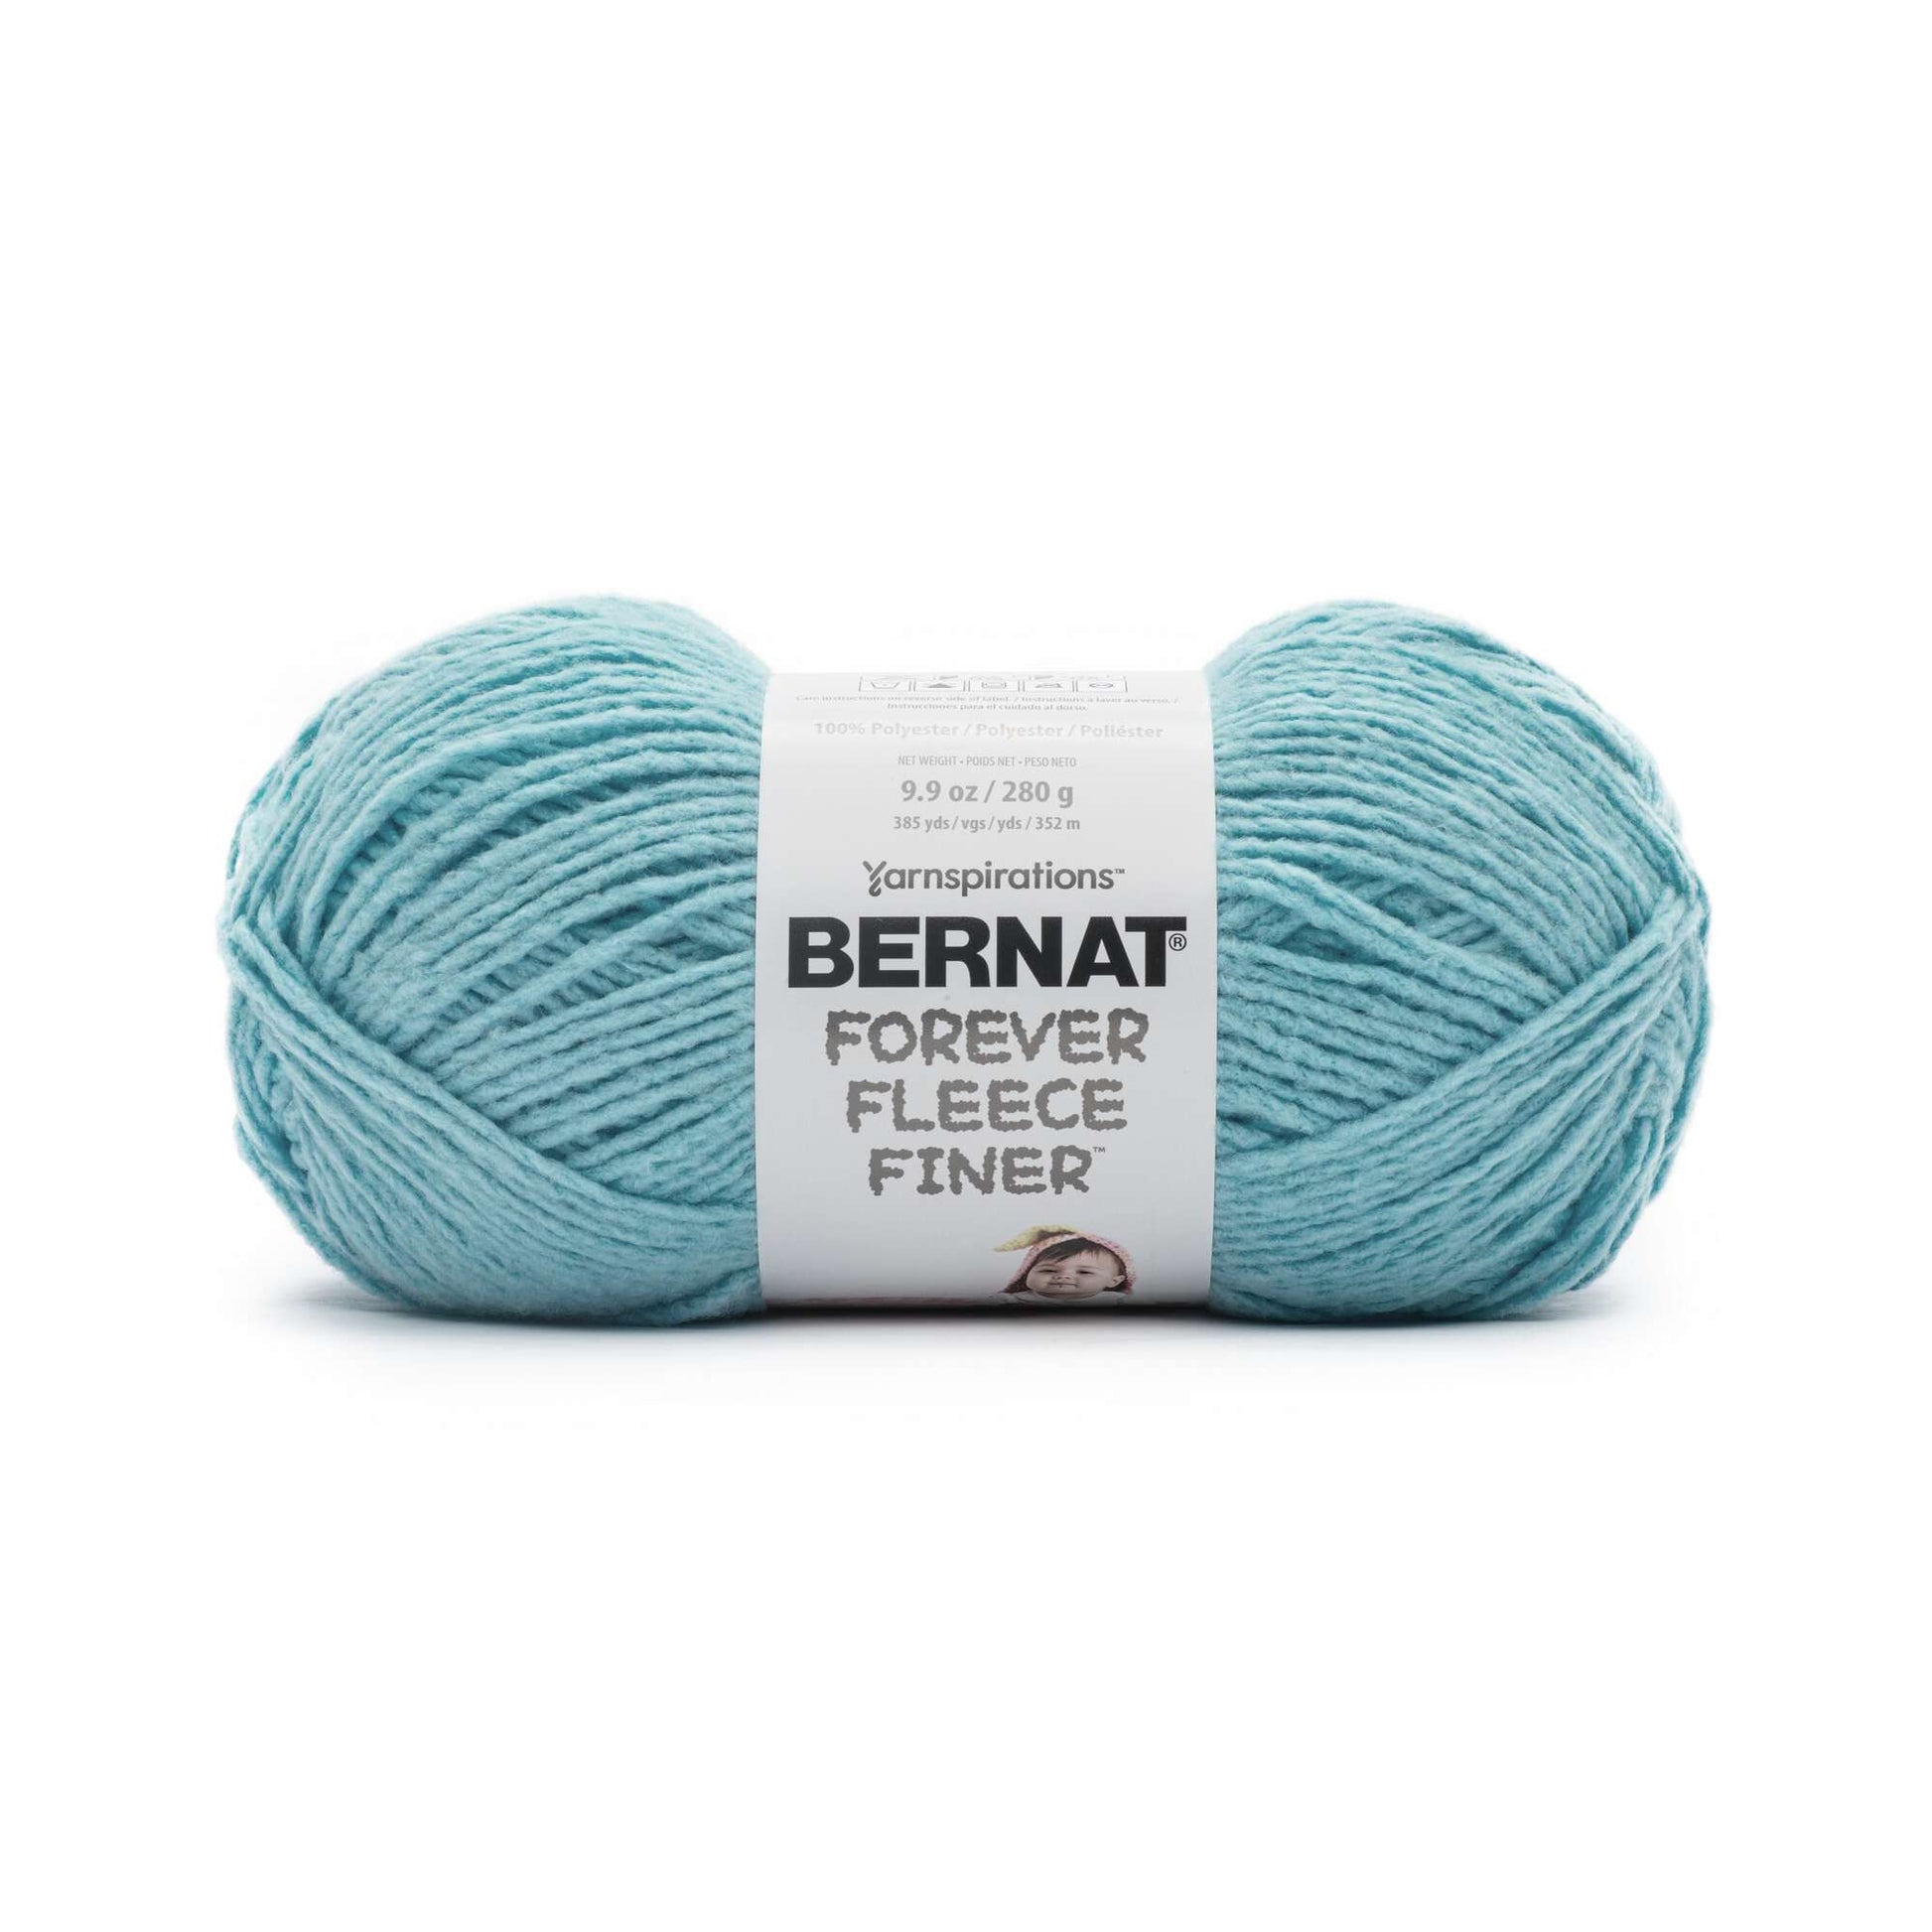 Bernat Forever Fleece Finer Yarn